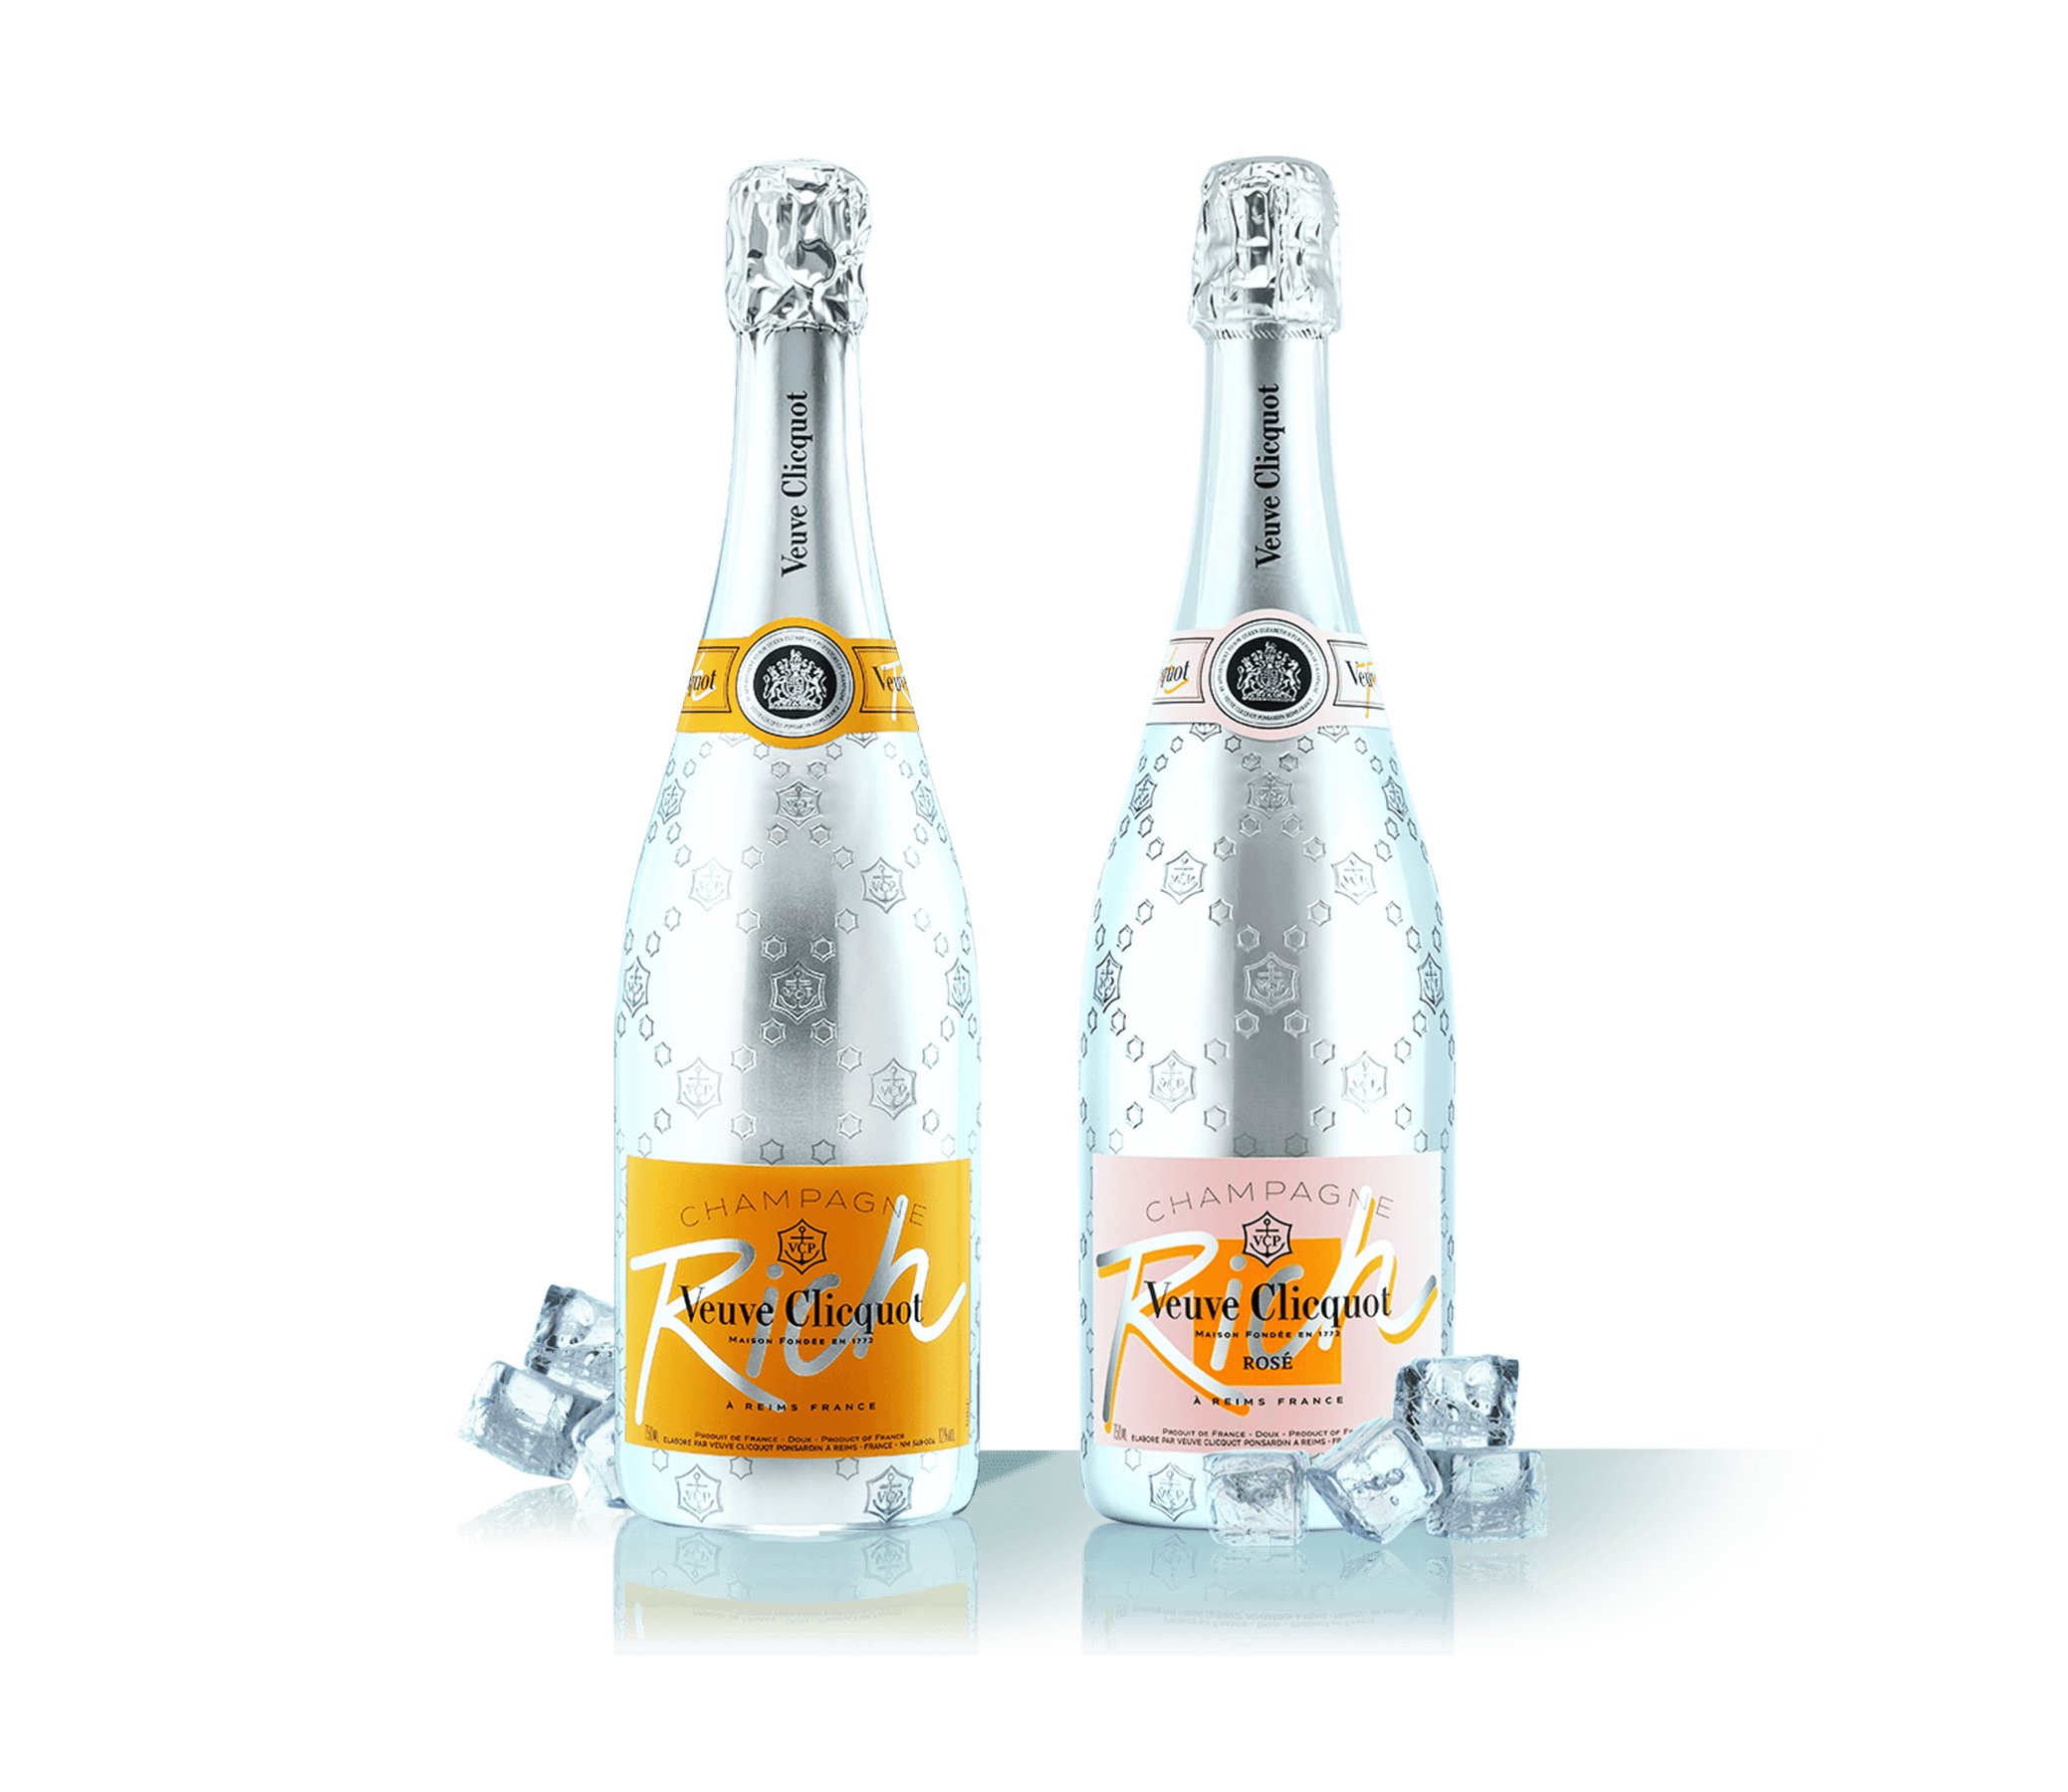 凯歌香槟发布两款新风味香槟